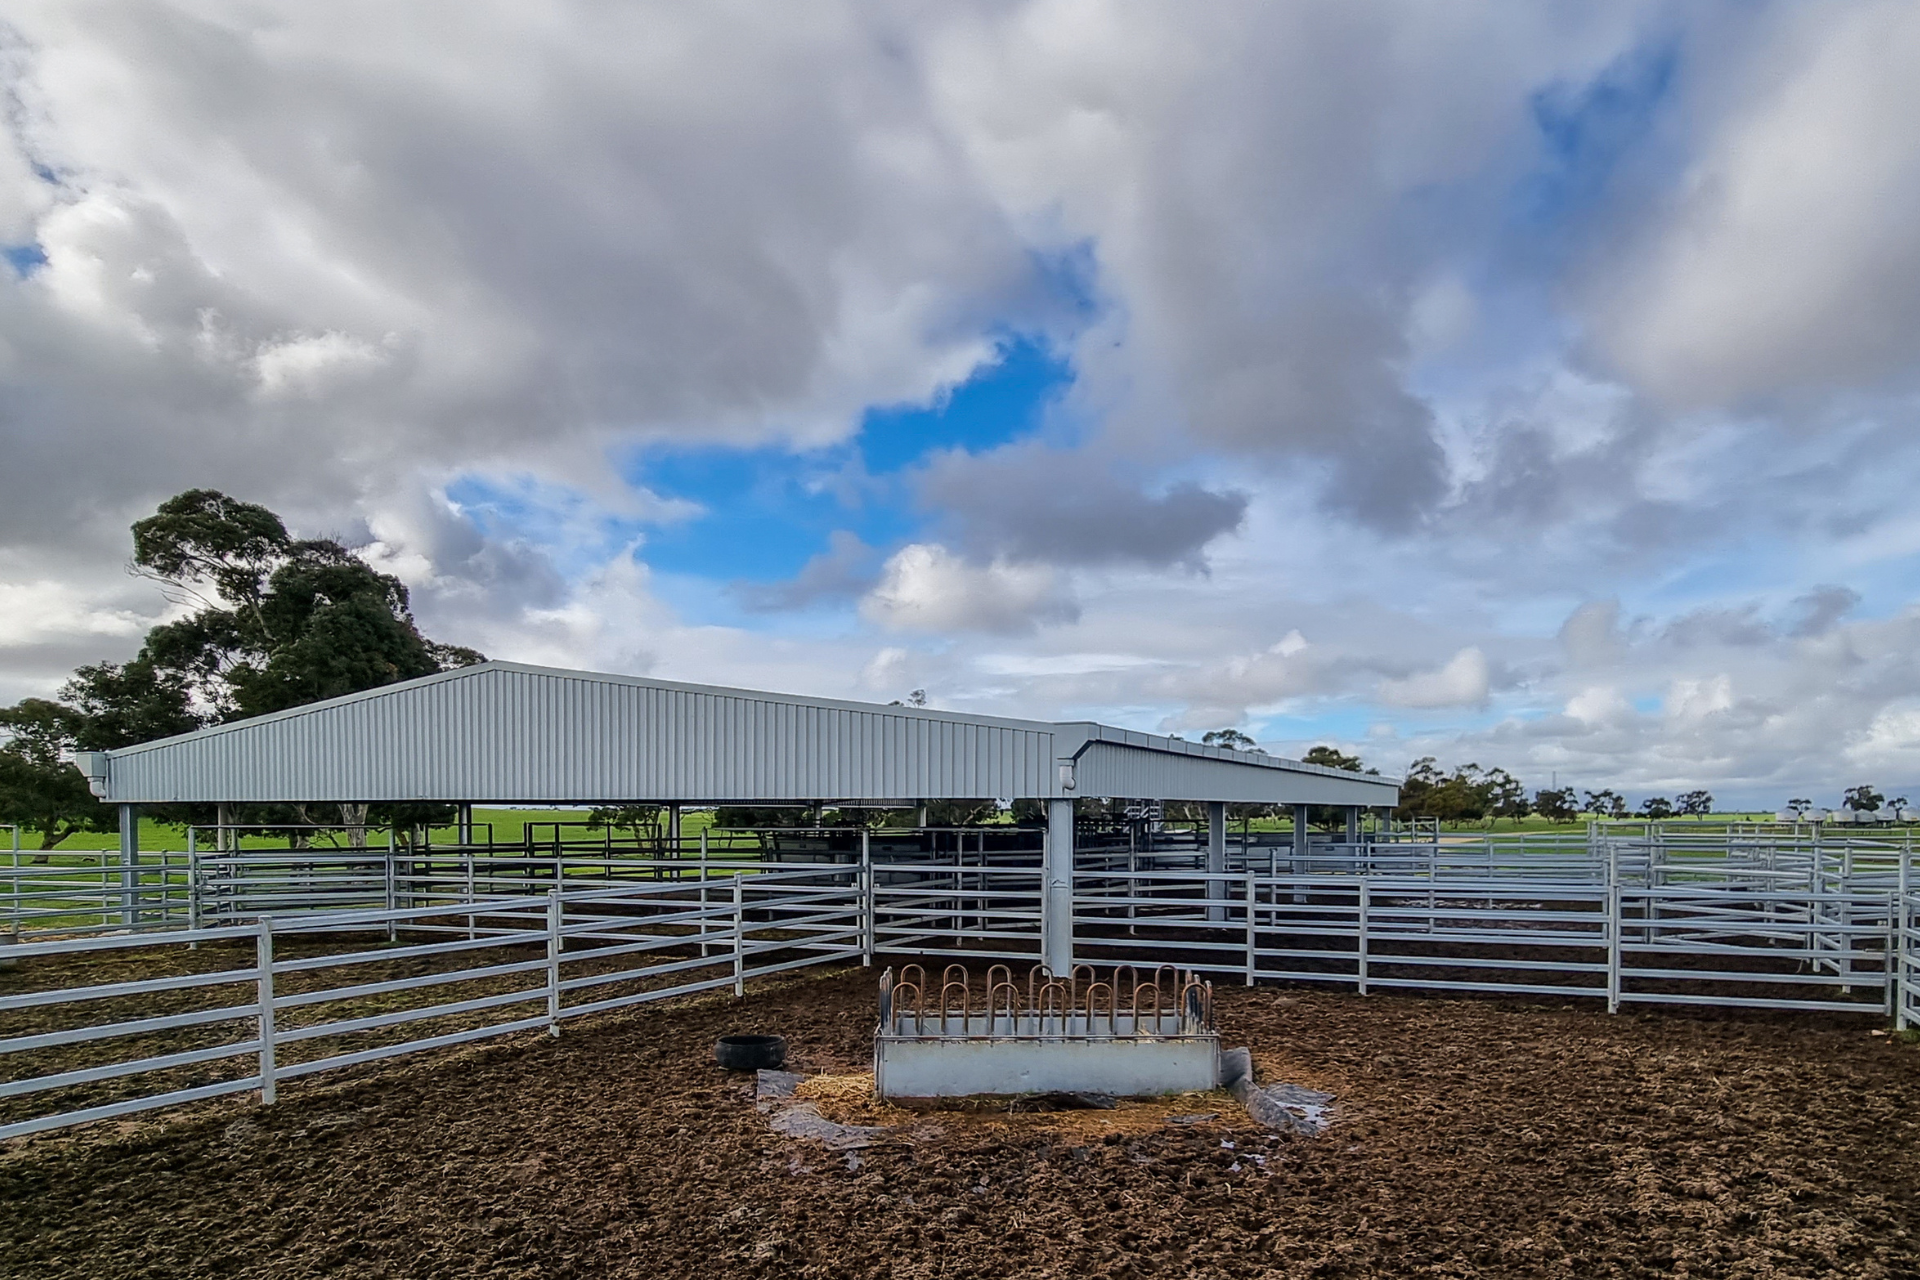 A 32m x 21m x 3.6m cattle yard cover at Culburra SA